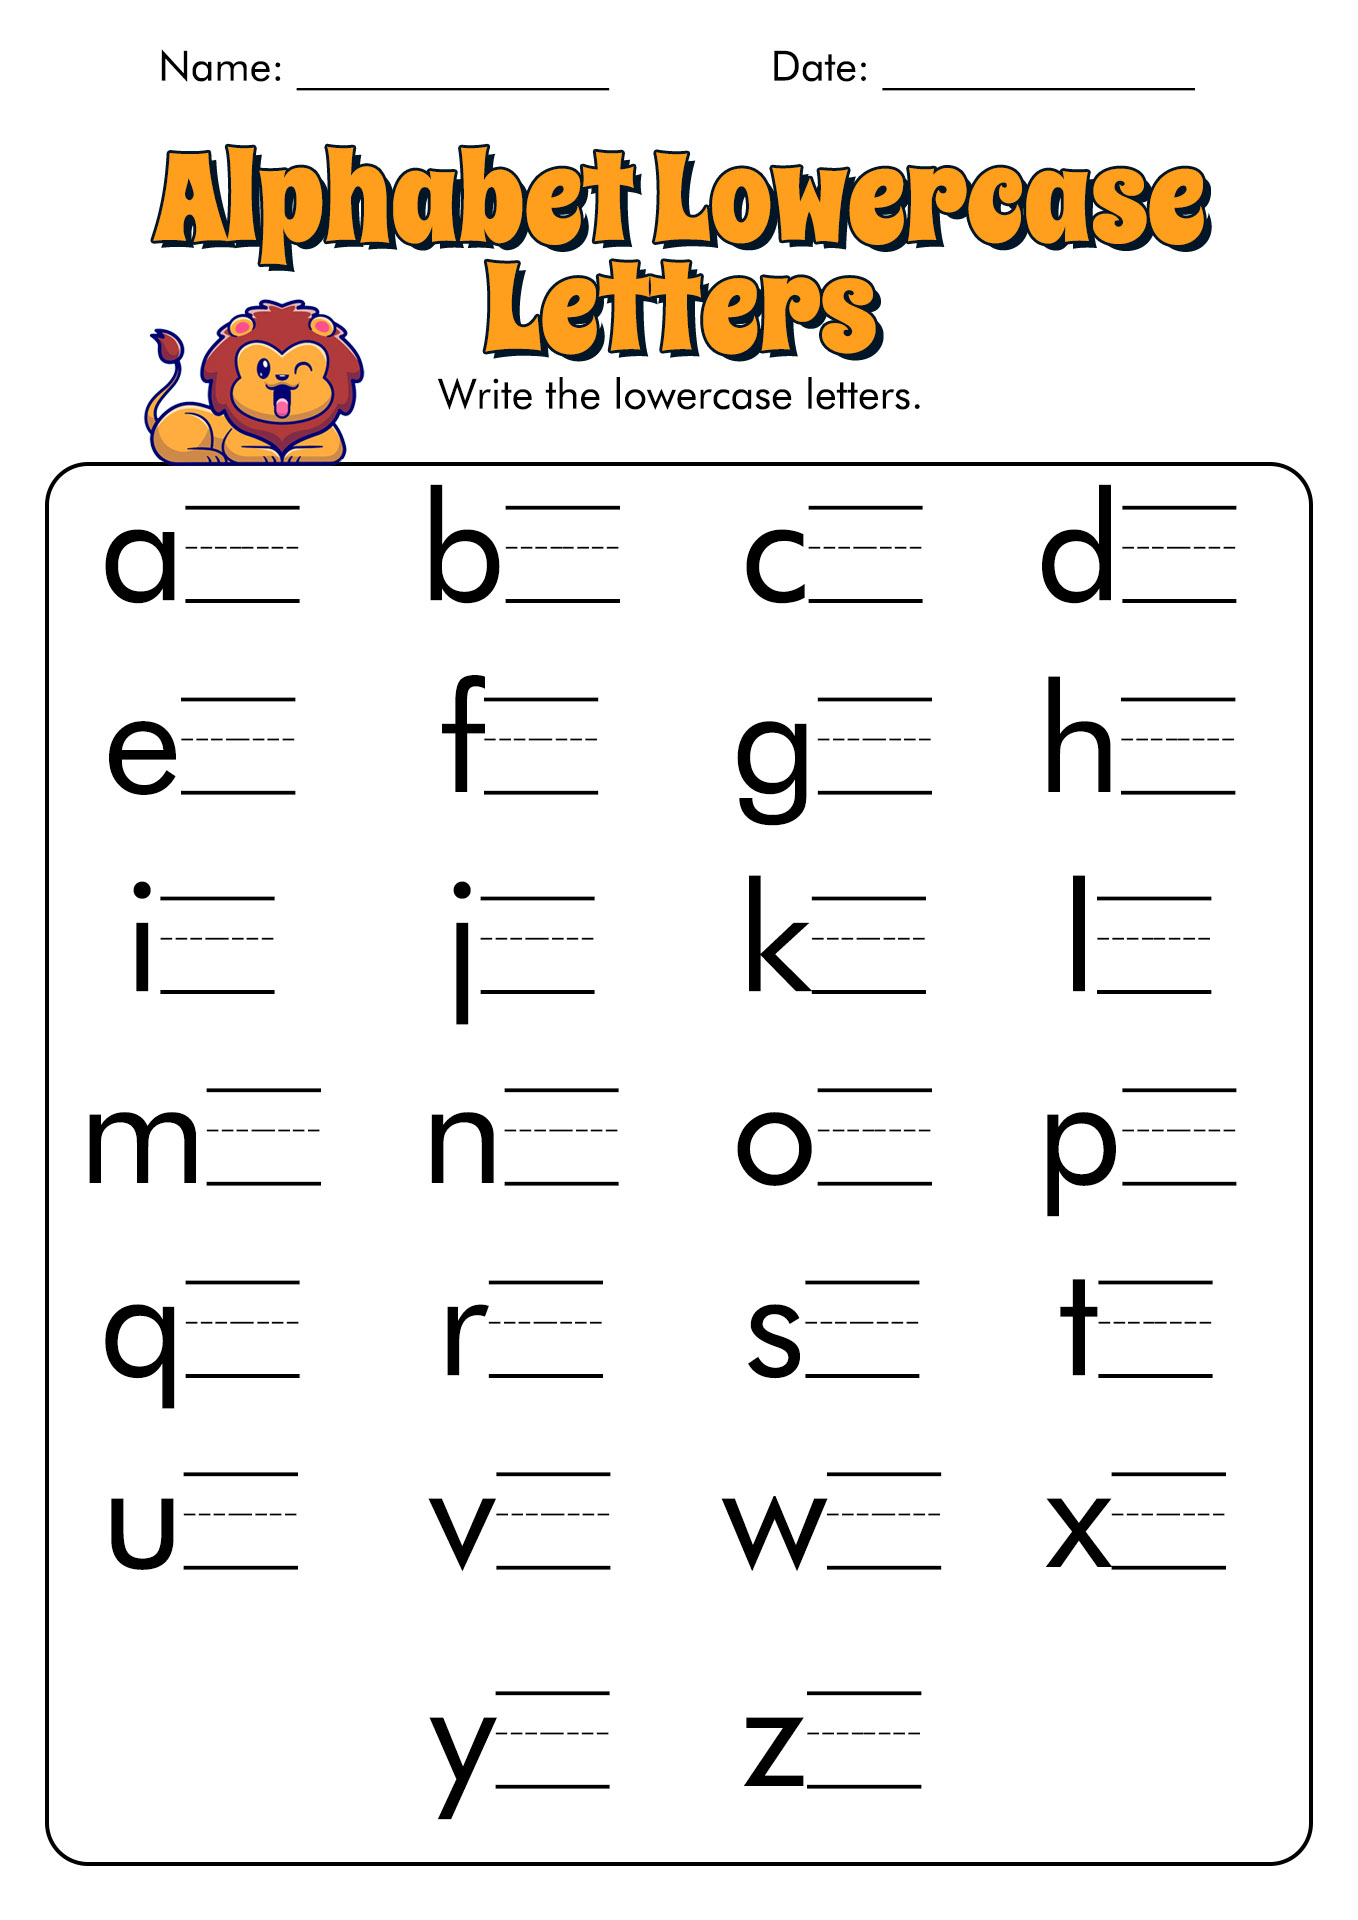 15 Alphabet Letter Practice Worksheets Free PDF At Worksheeto